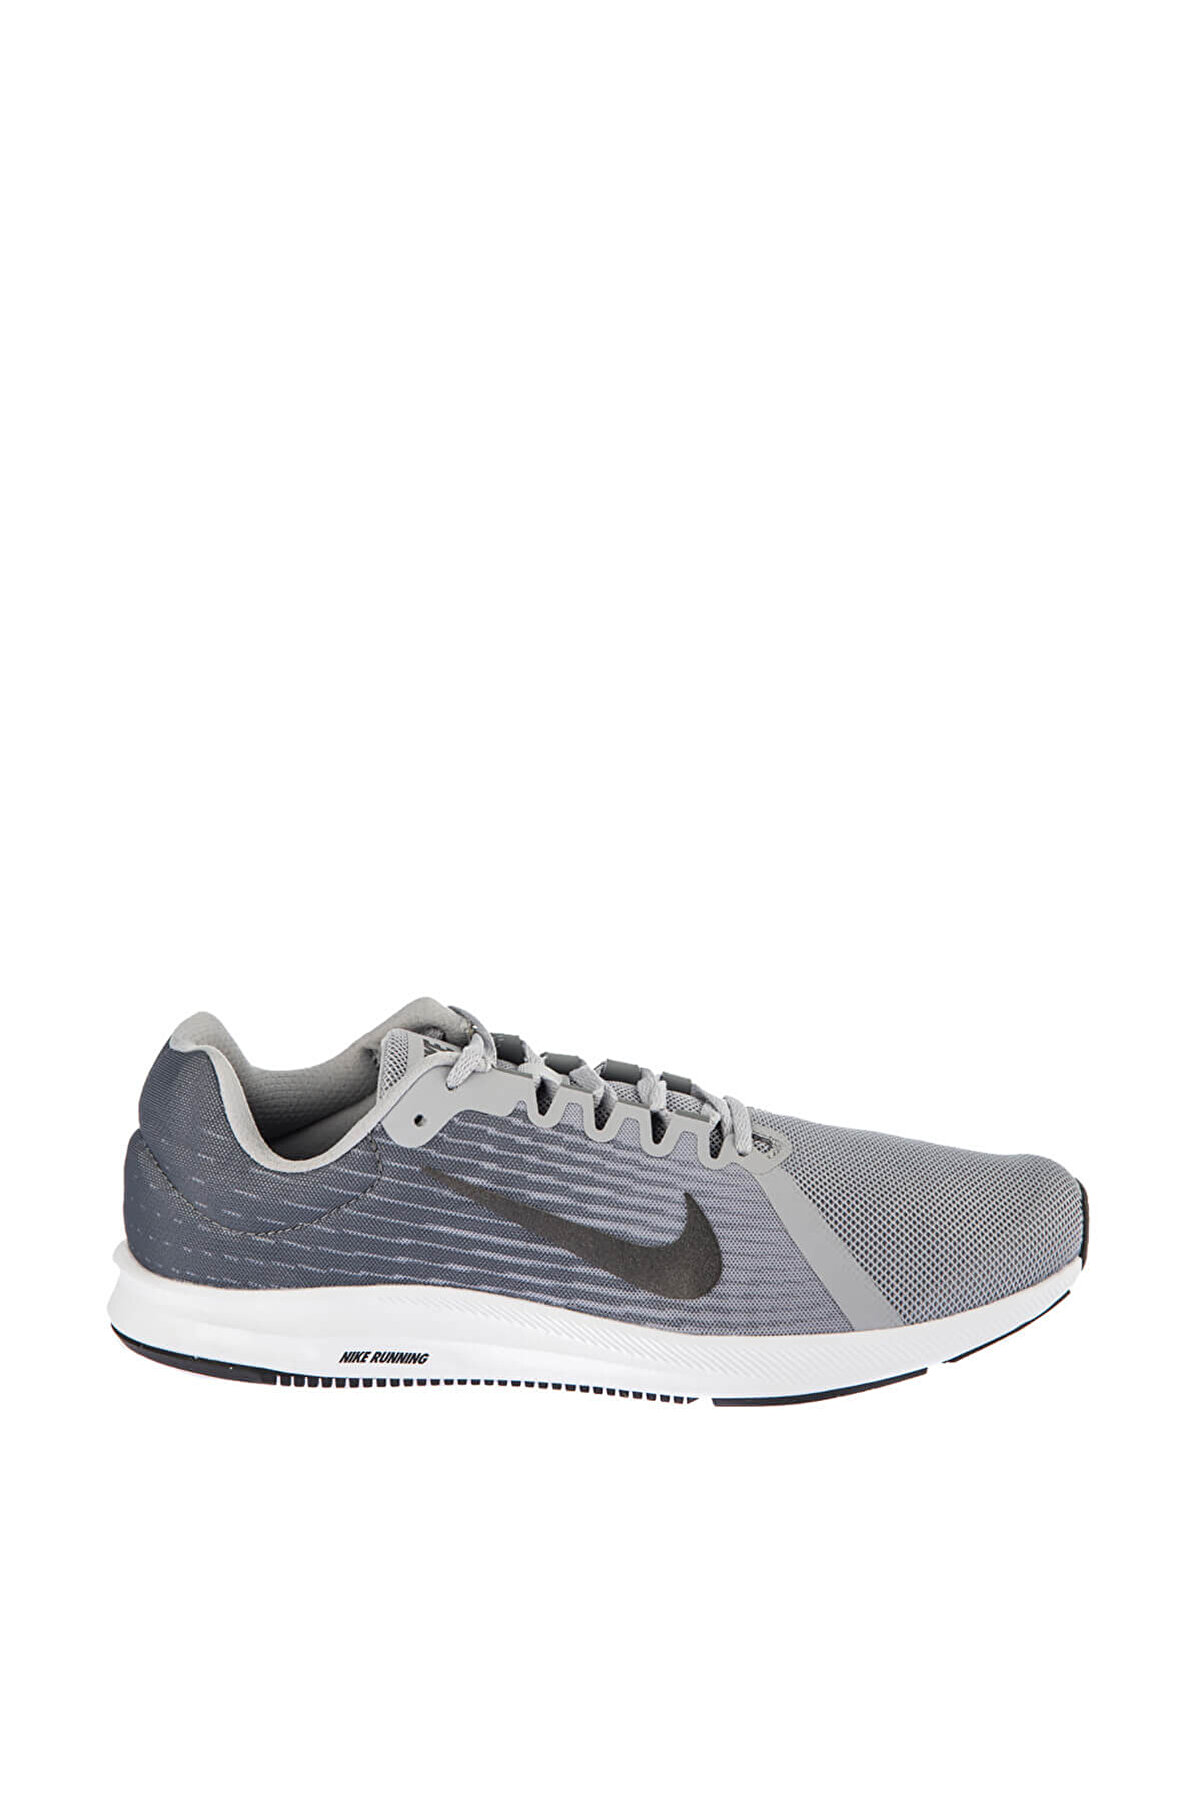 Nike Erkek Koşu Ayakkabı - Downshifter 8 Spor Ayakkabı - 908984-004